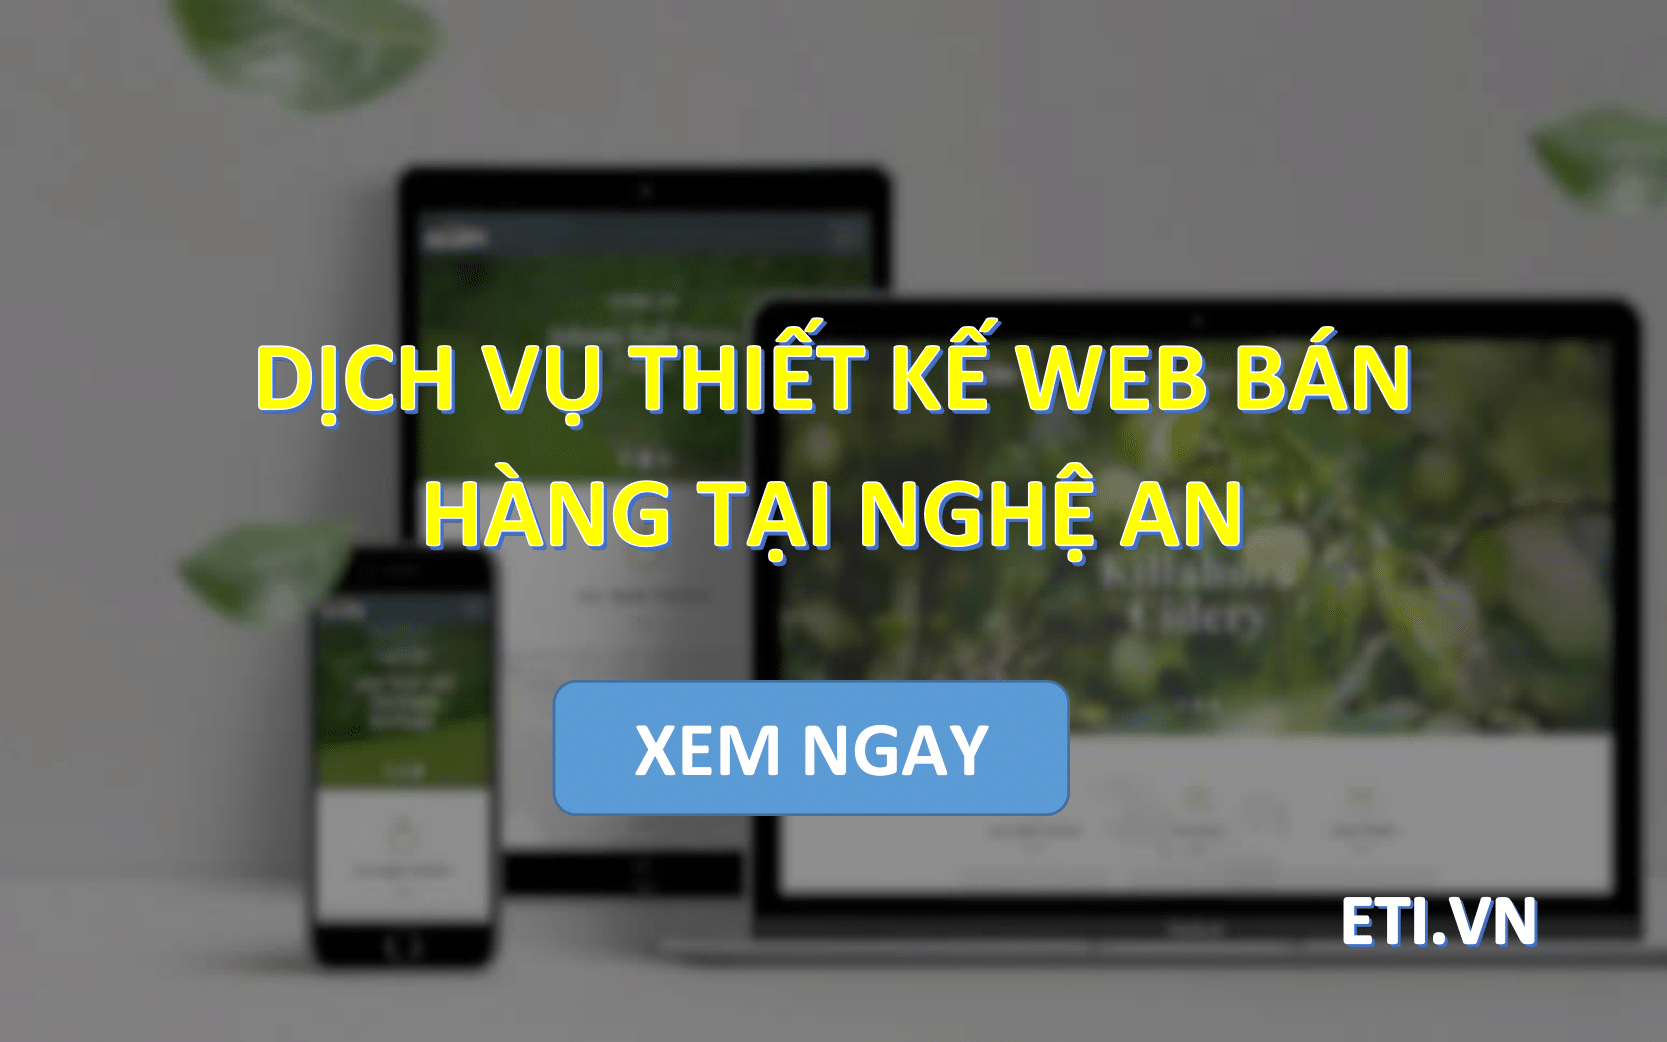 Dịch vụ Thiết kế web bán hàng tại Nghệ An